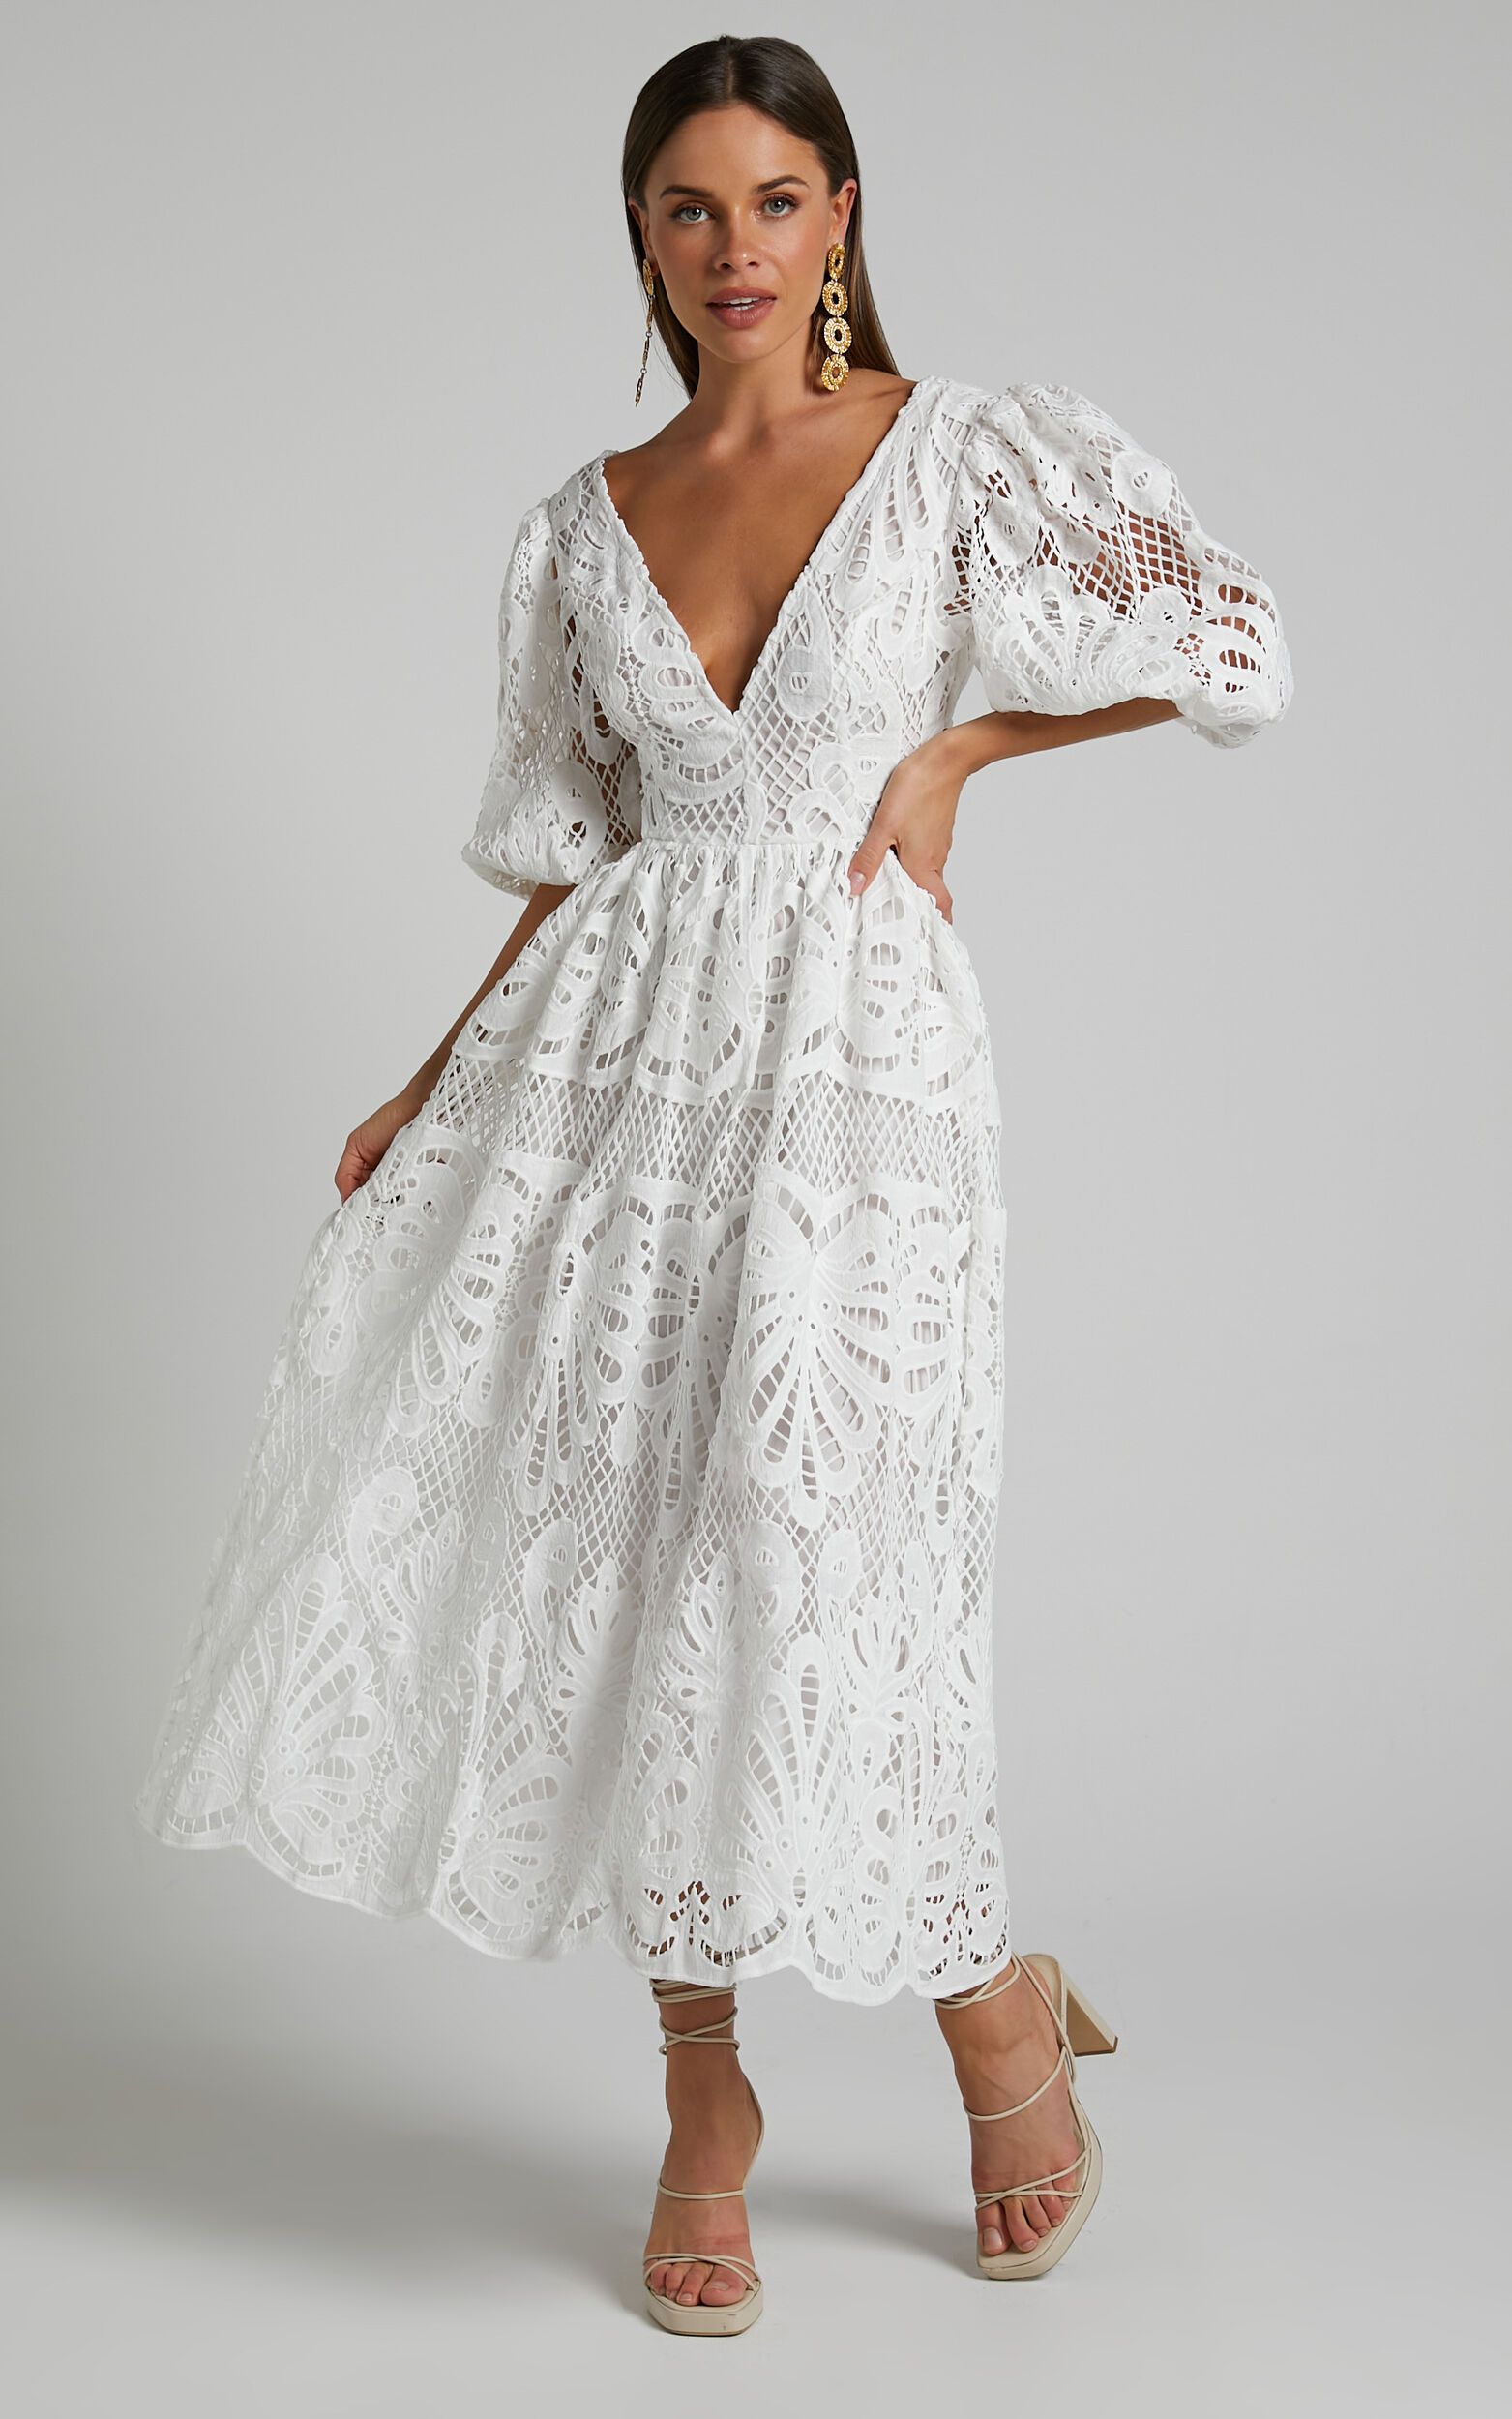 Anieshaya Midi Dress - V Neck Cut Out Lace Dress in White | Showpo (US, UK & Europe)